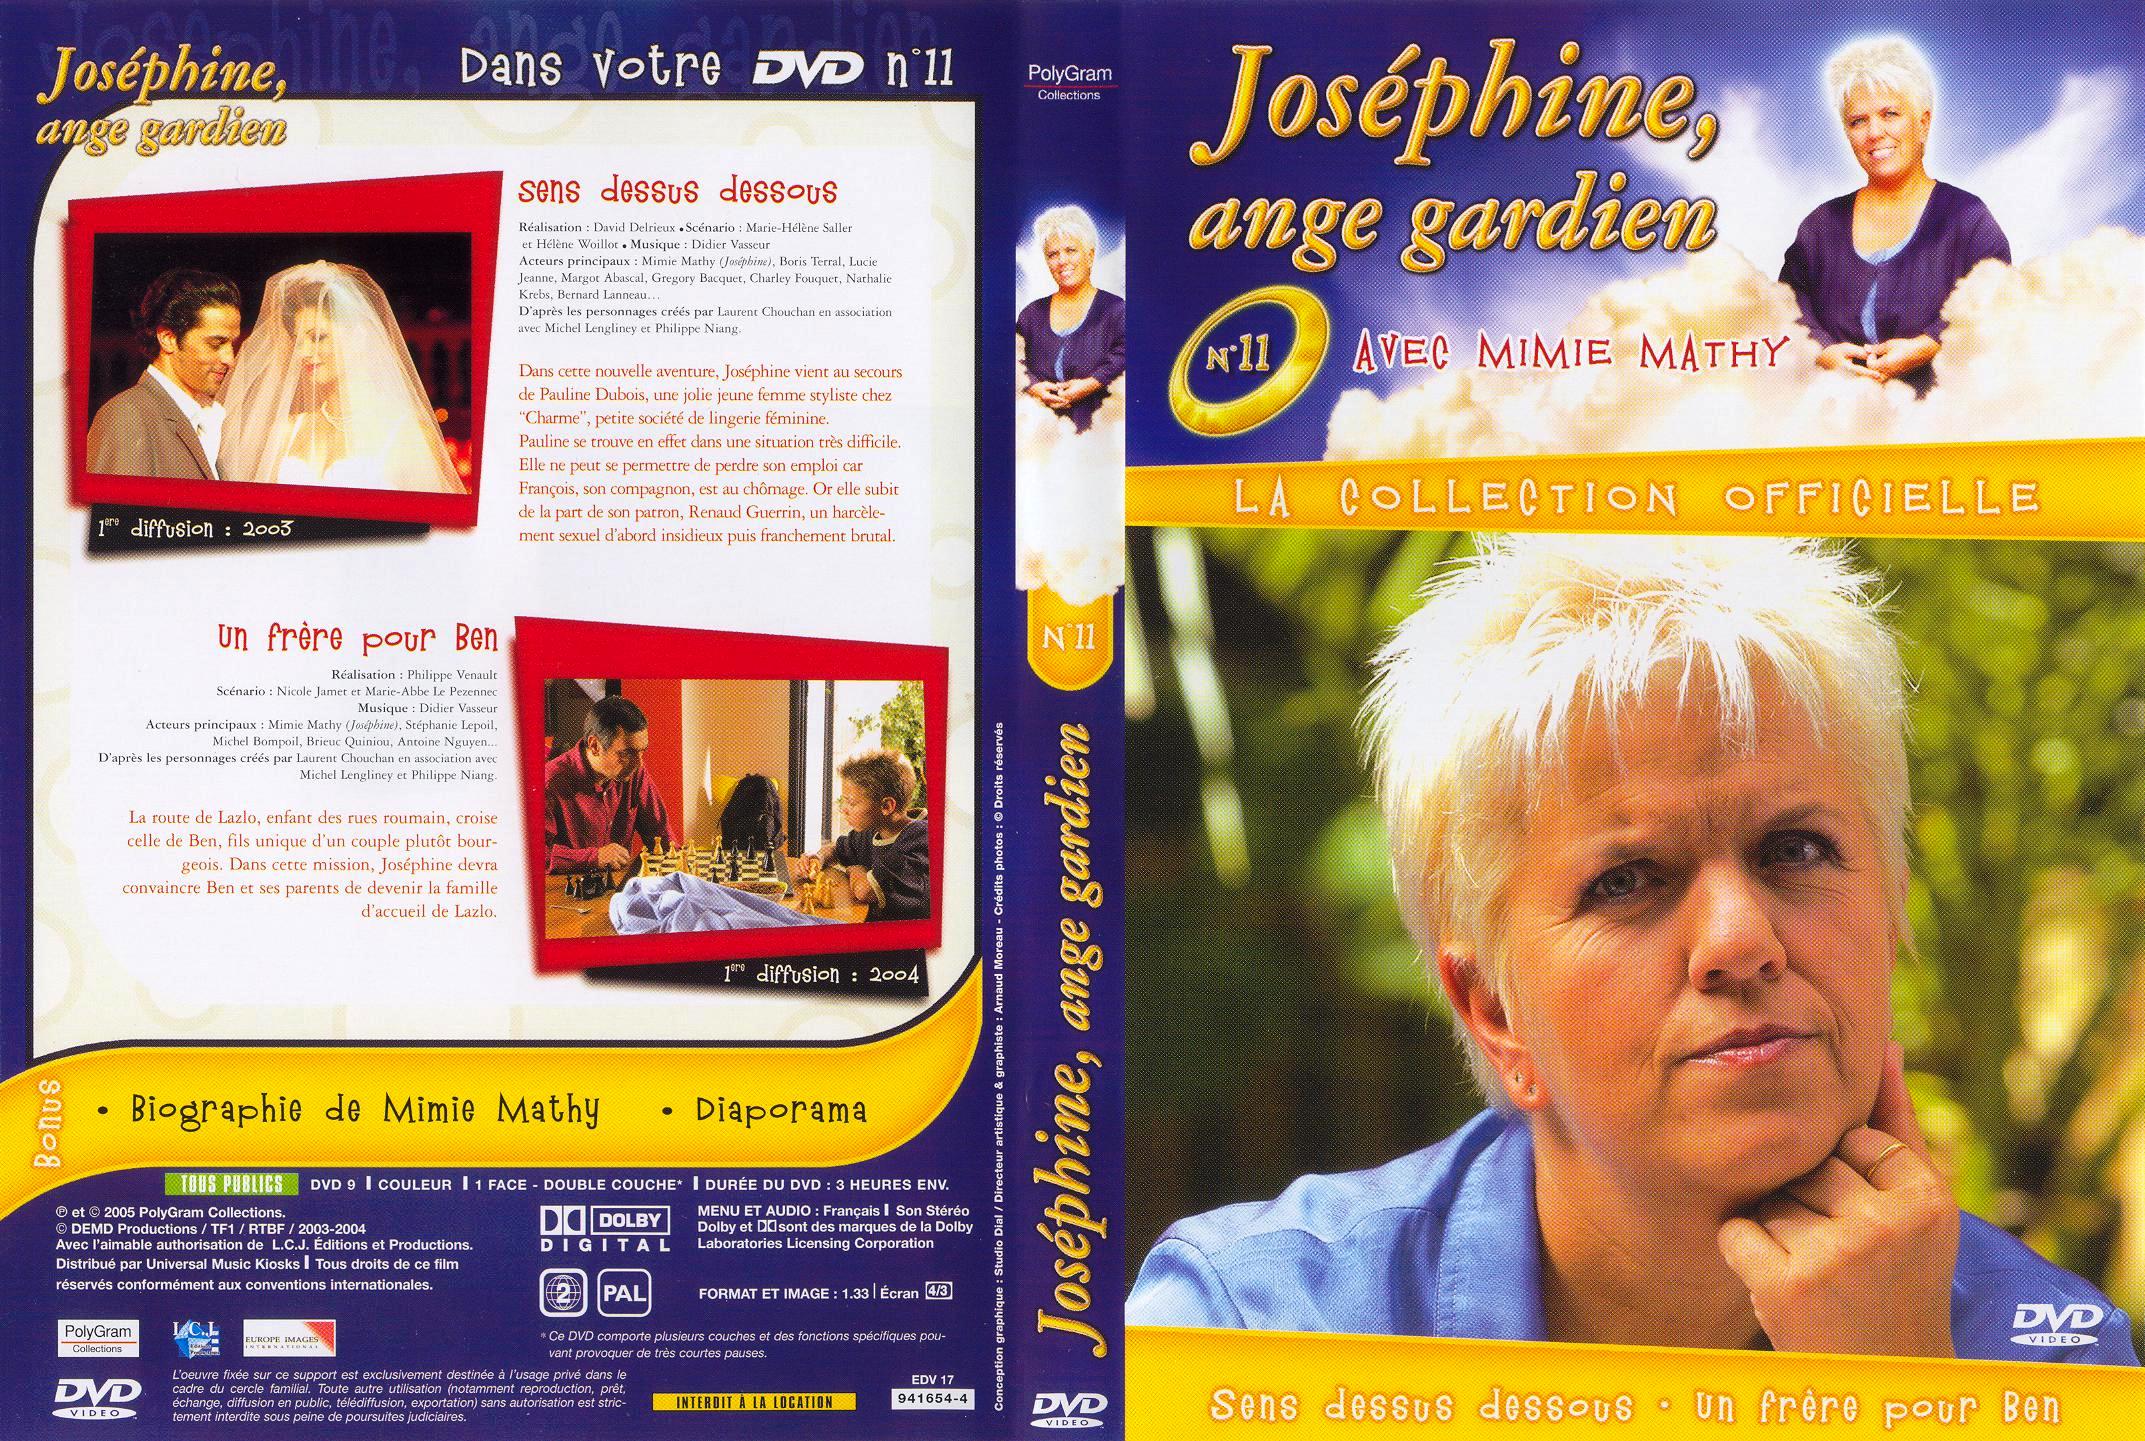 Jaquette DVD Josephine ange gardien vol 11